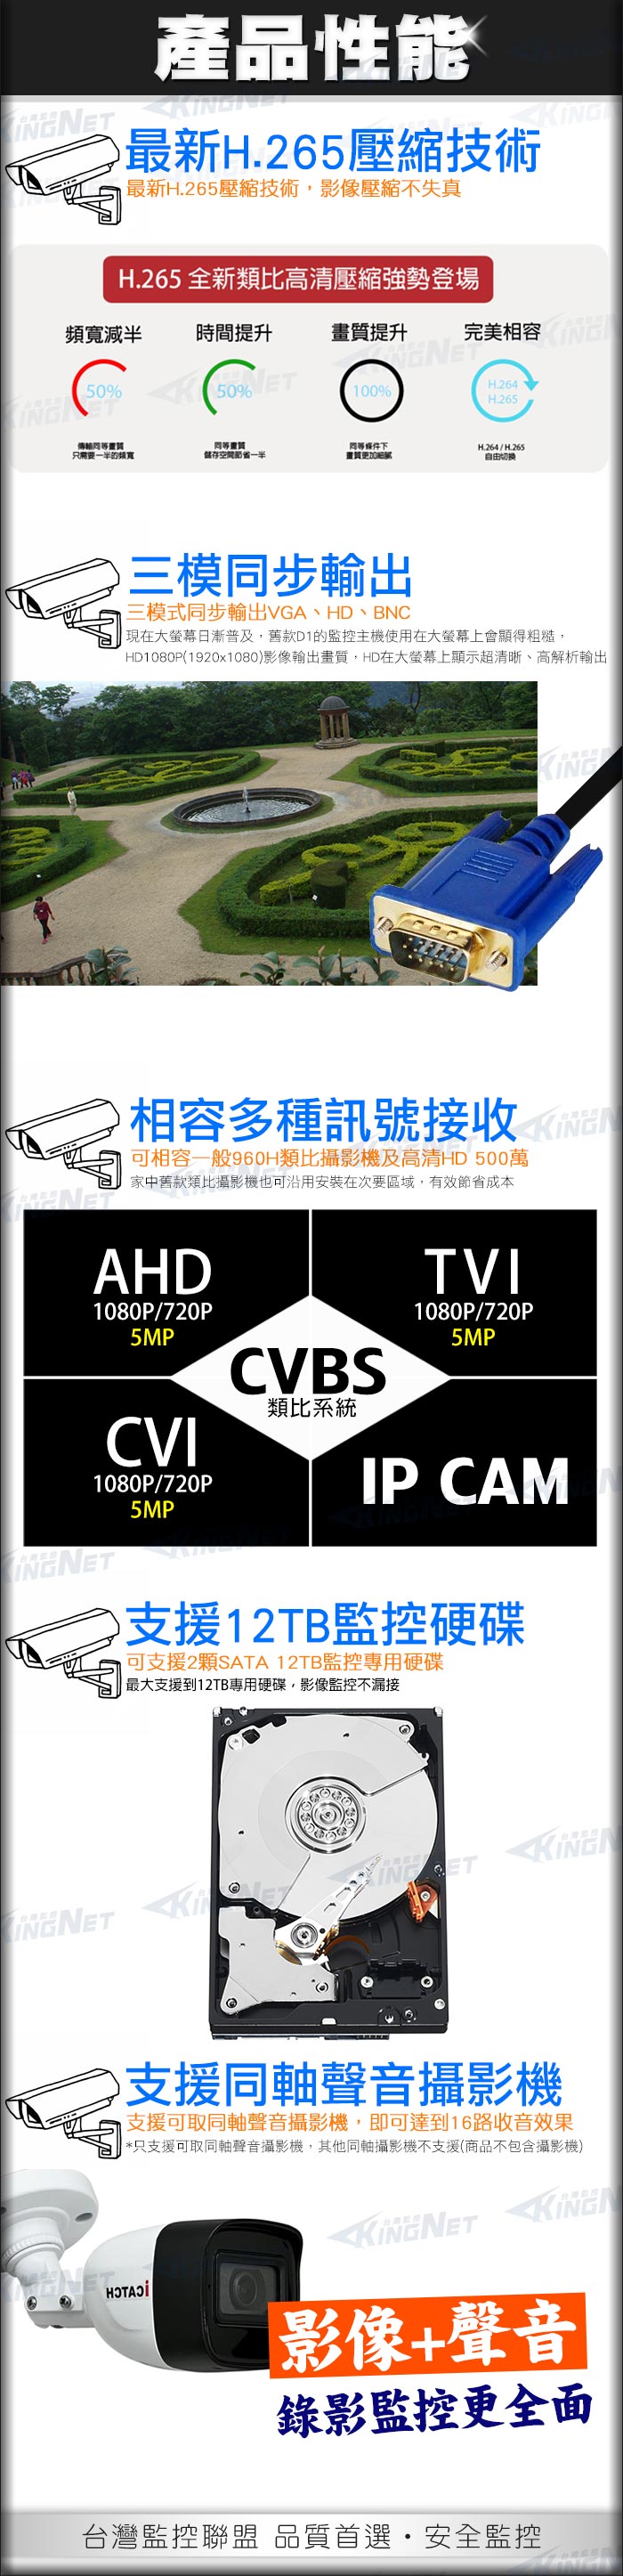 監視器攝影機 KINGNET 可取 iCATCH AHD DVR 16路 台灣大廠 監視器主機 1080P 混合型 十六路主機 16路